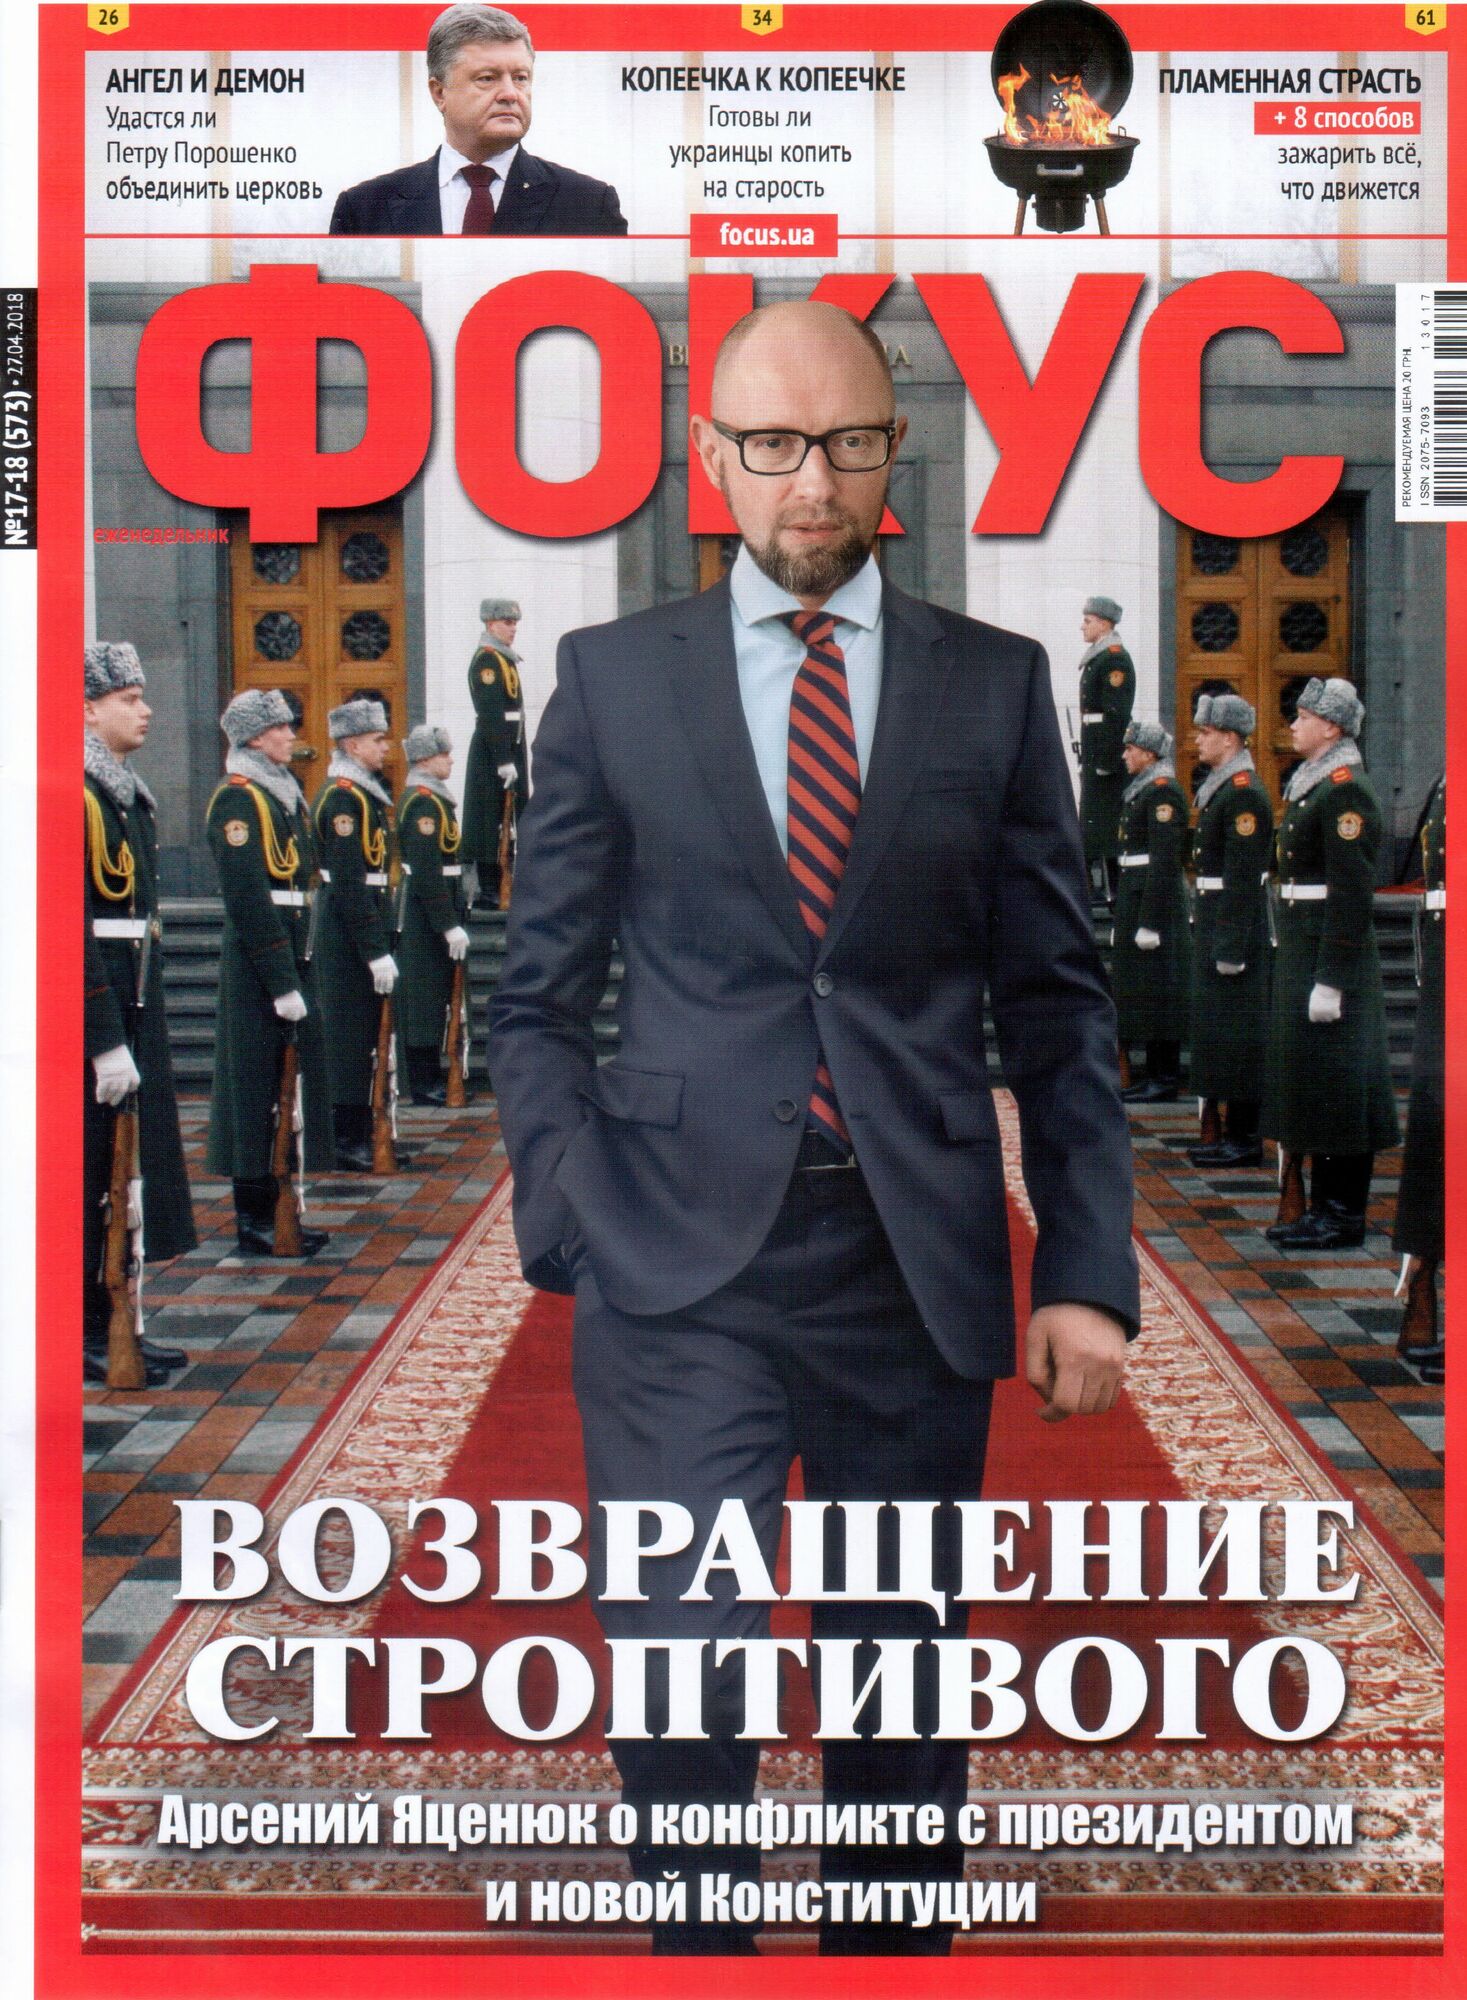 "Должен иметь четкую сферу": Яценюк предостерег президента от судьбы Путина